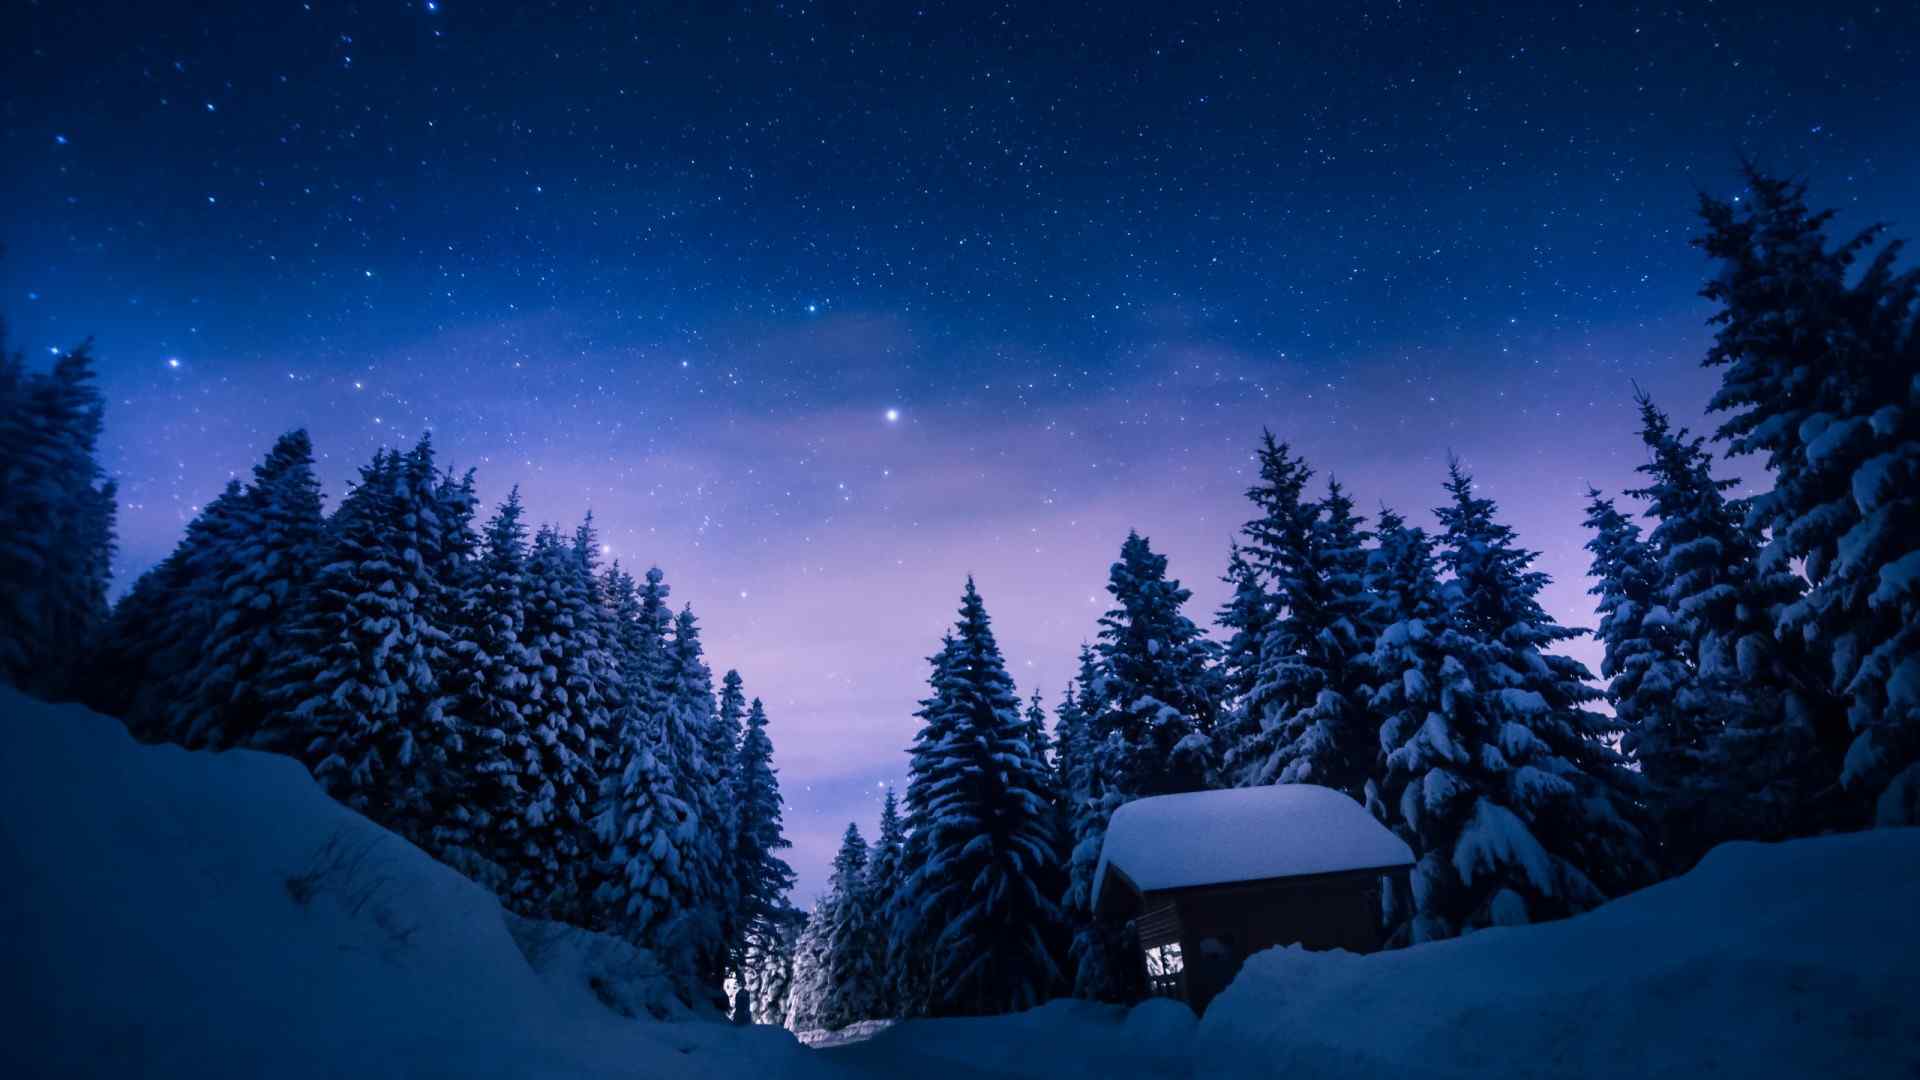 夜晚雪景与银河风景桌面壁纸